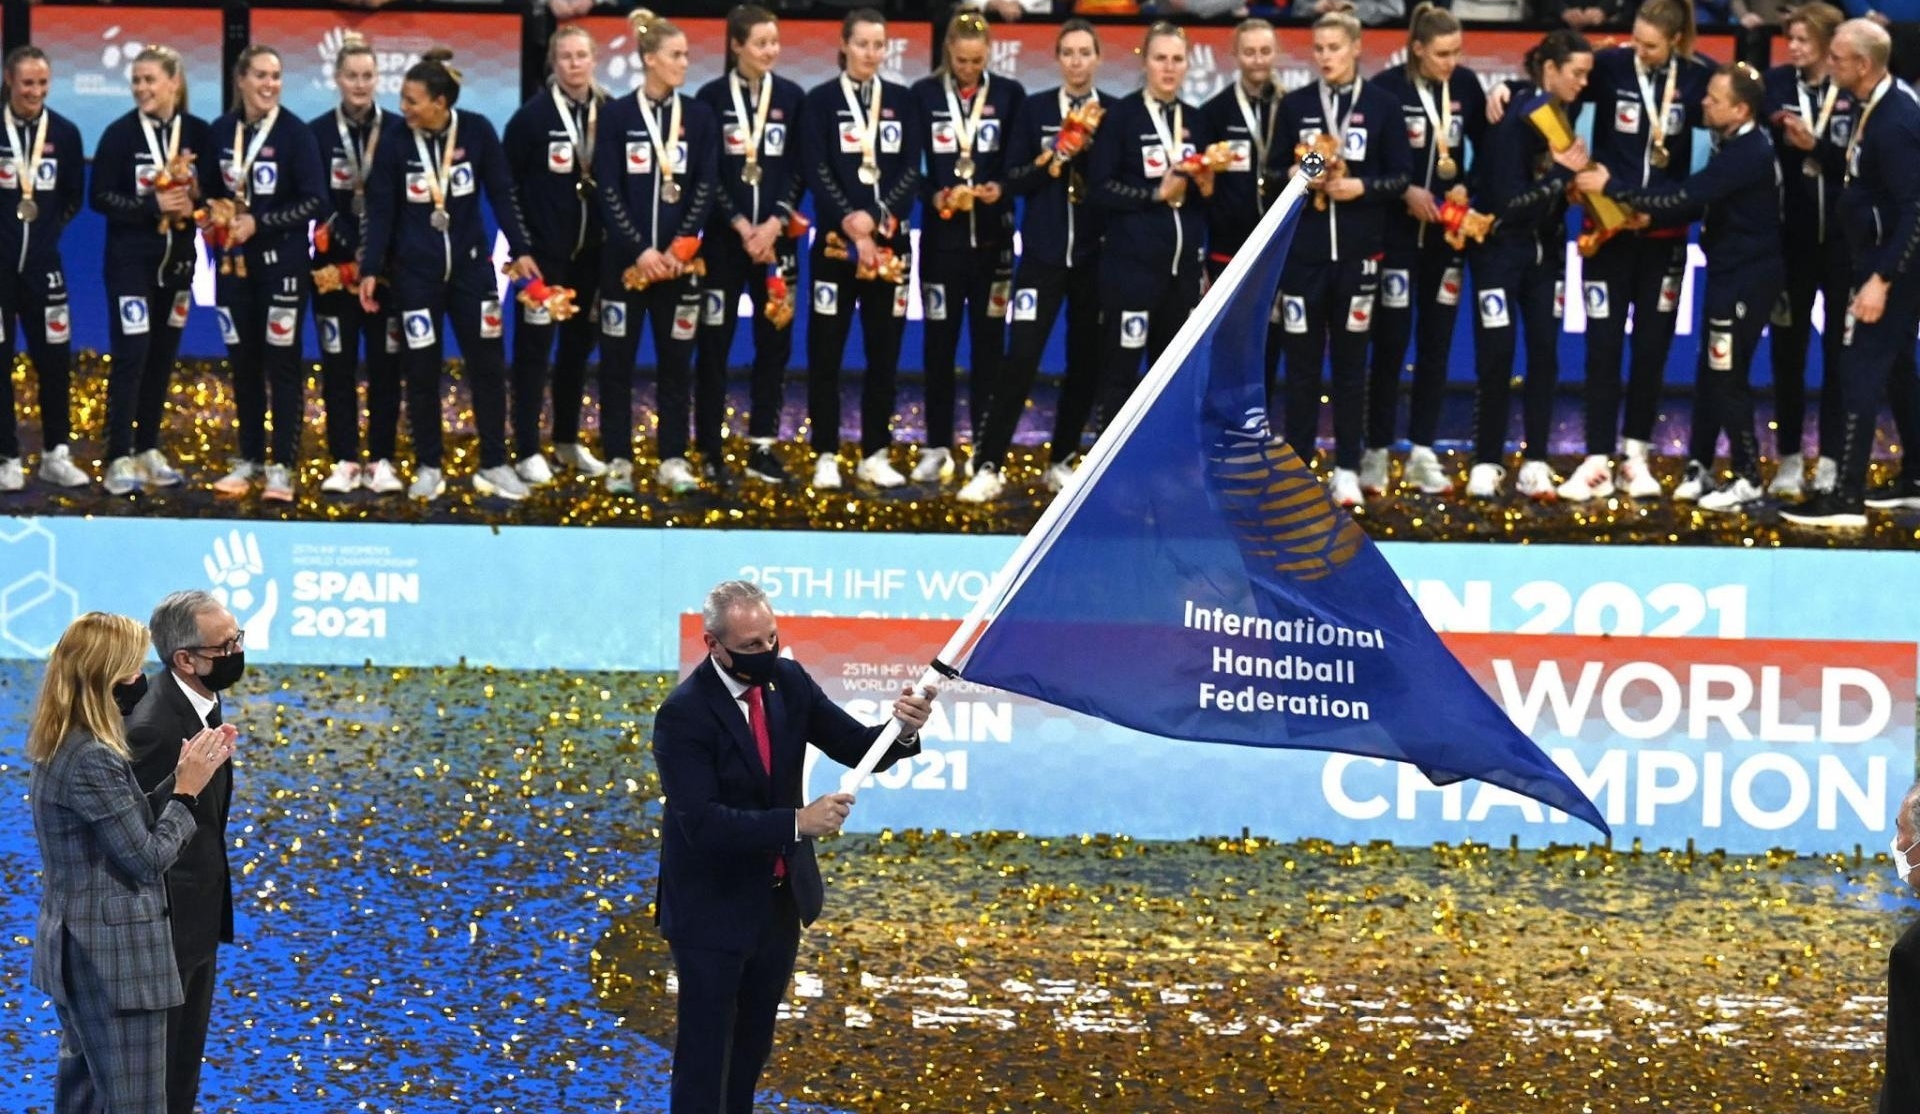 El Presidente de la RFEBM pasa la bandera de la IHF al organizador del Mundial 2023 /